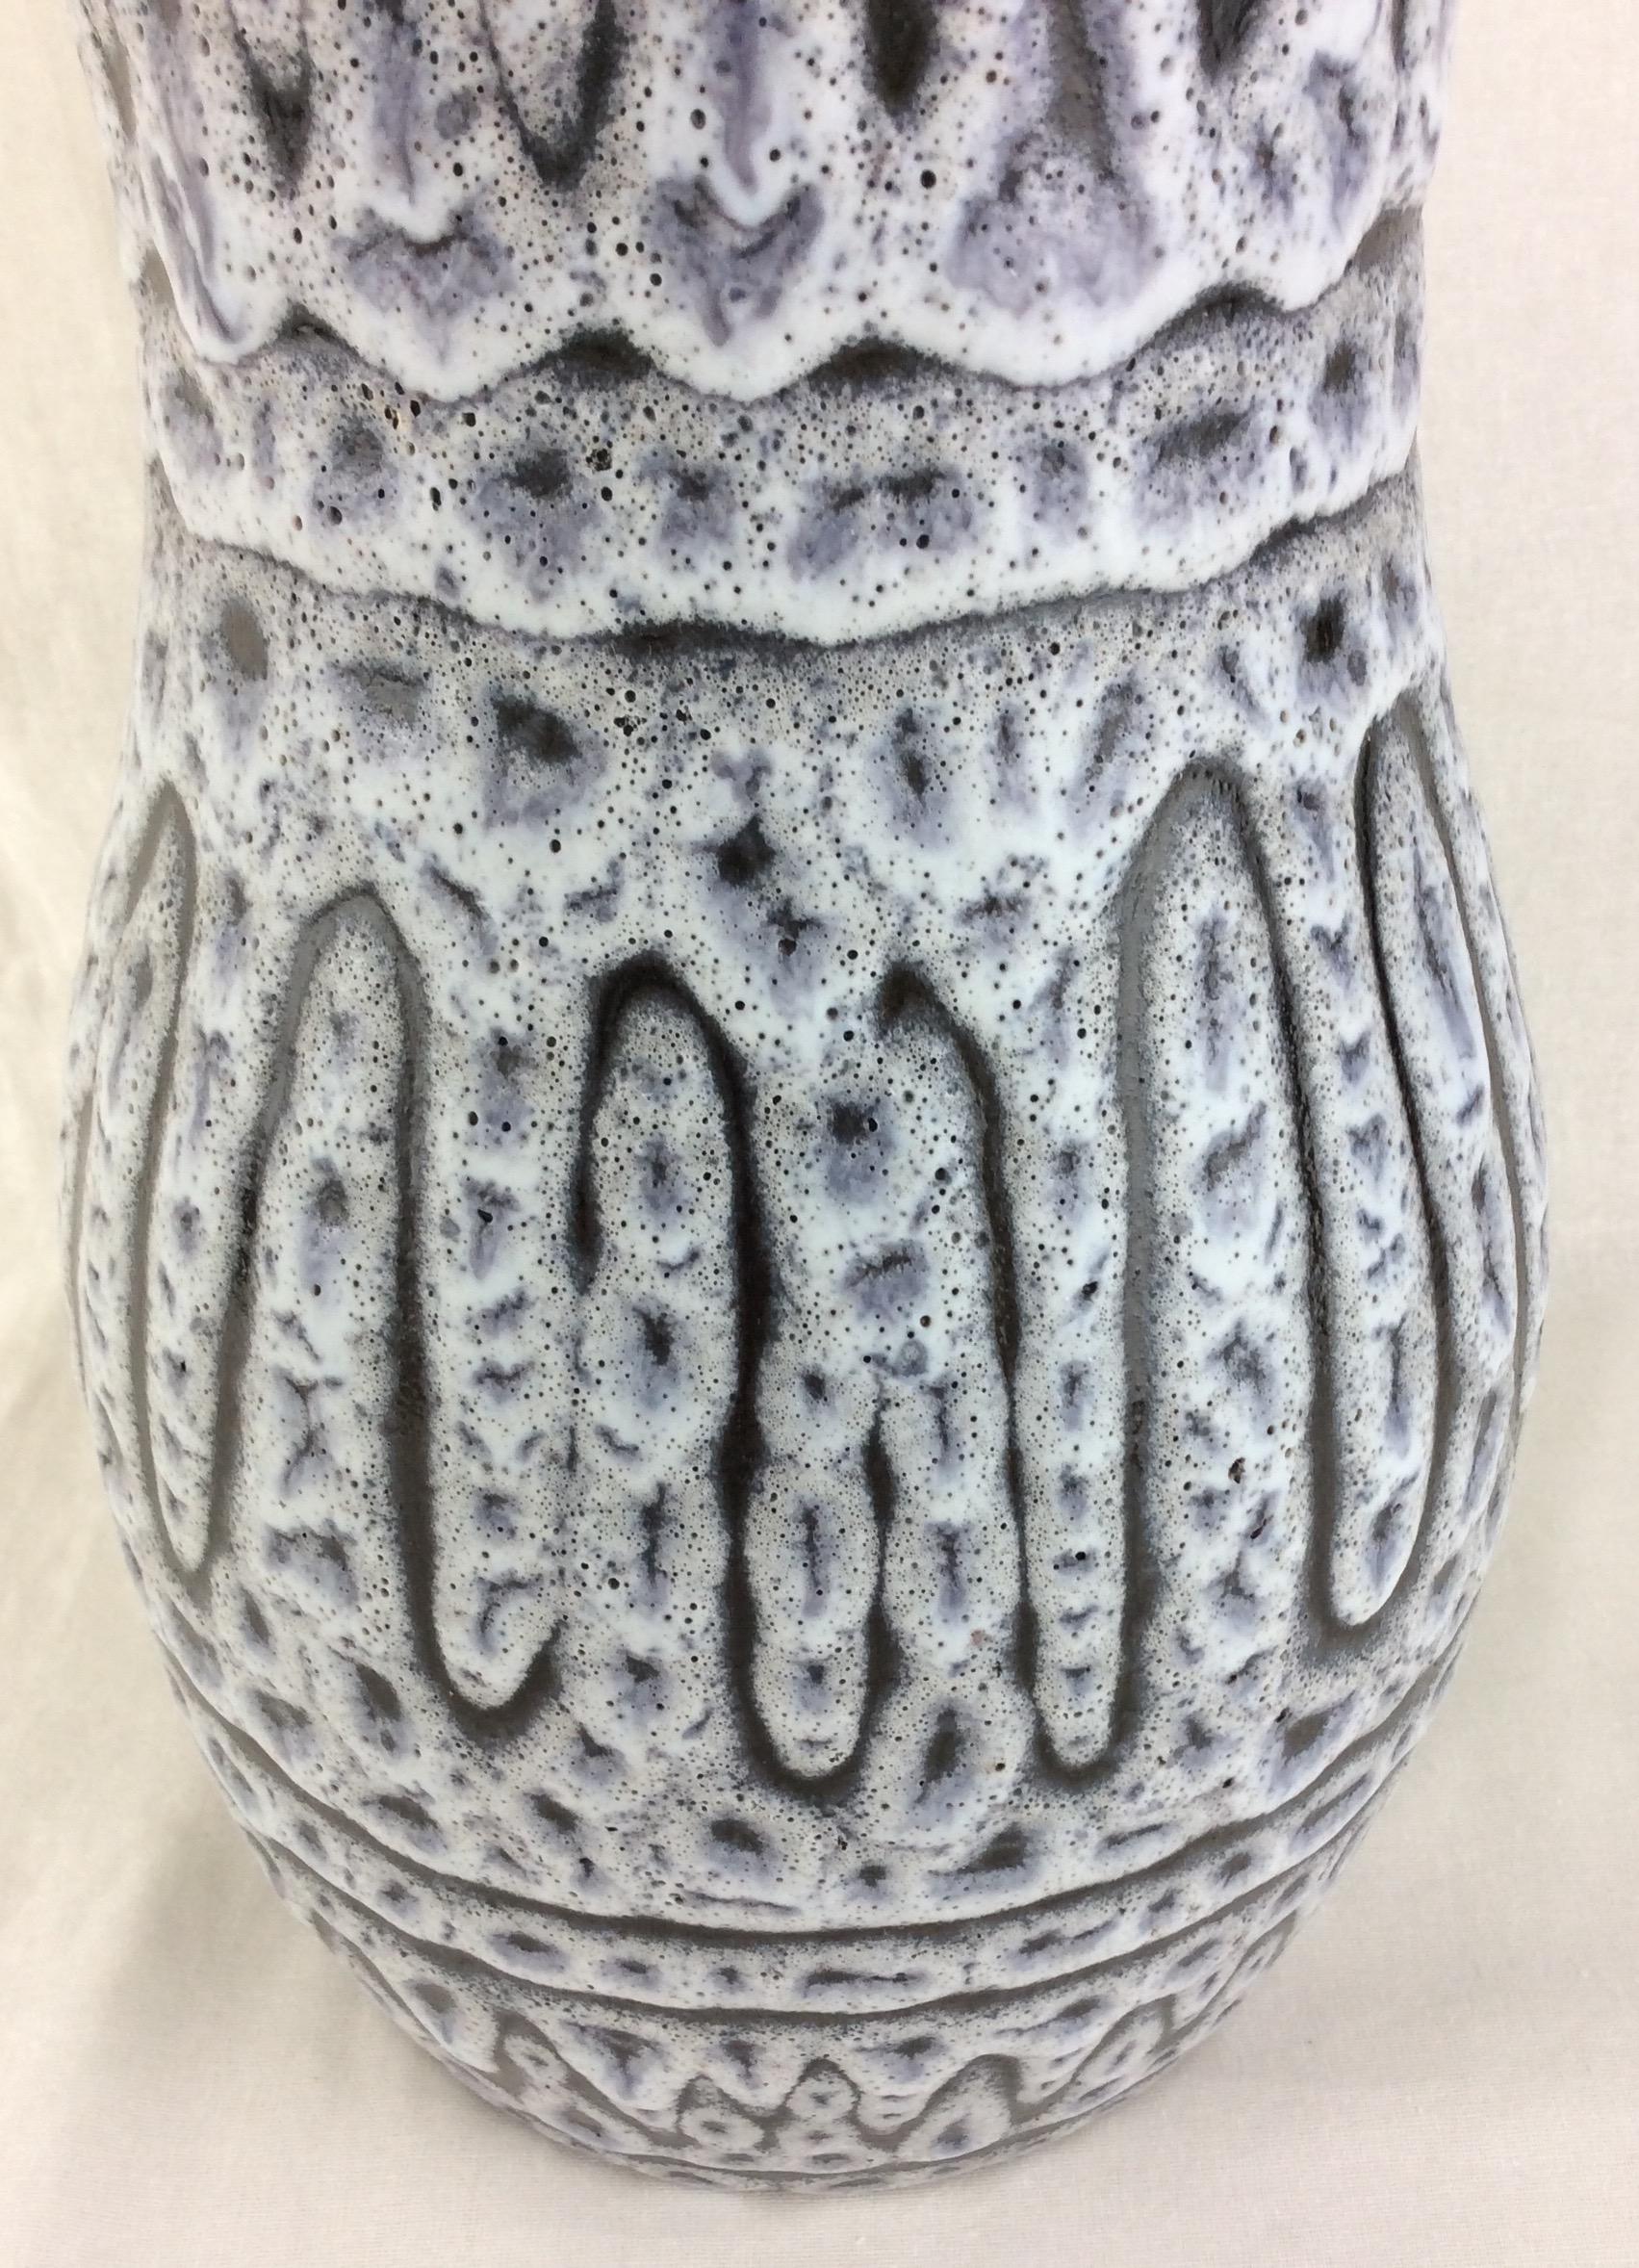 Cet éblouissant vase en céramique émaillée a été fabriqué à la main à Vallauris, en France, vers 1950-1959.
Les couleurs primaires grises et blanches sont vraiment magnifiques.  

Il peut rehausser n'importe quelle étagère, table, crédence ou